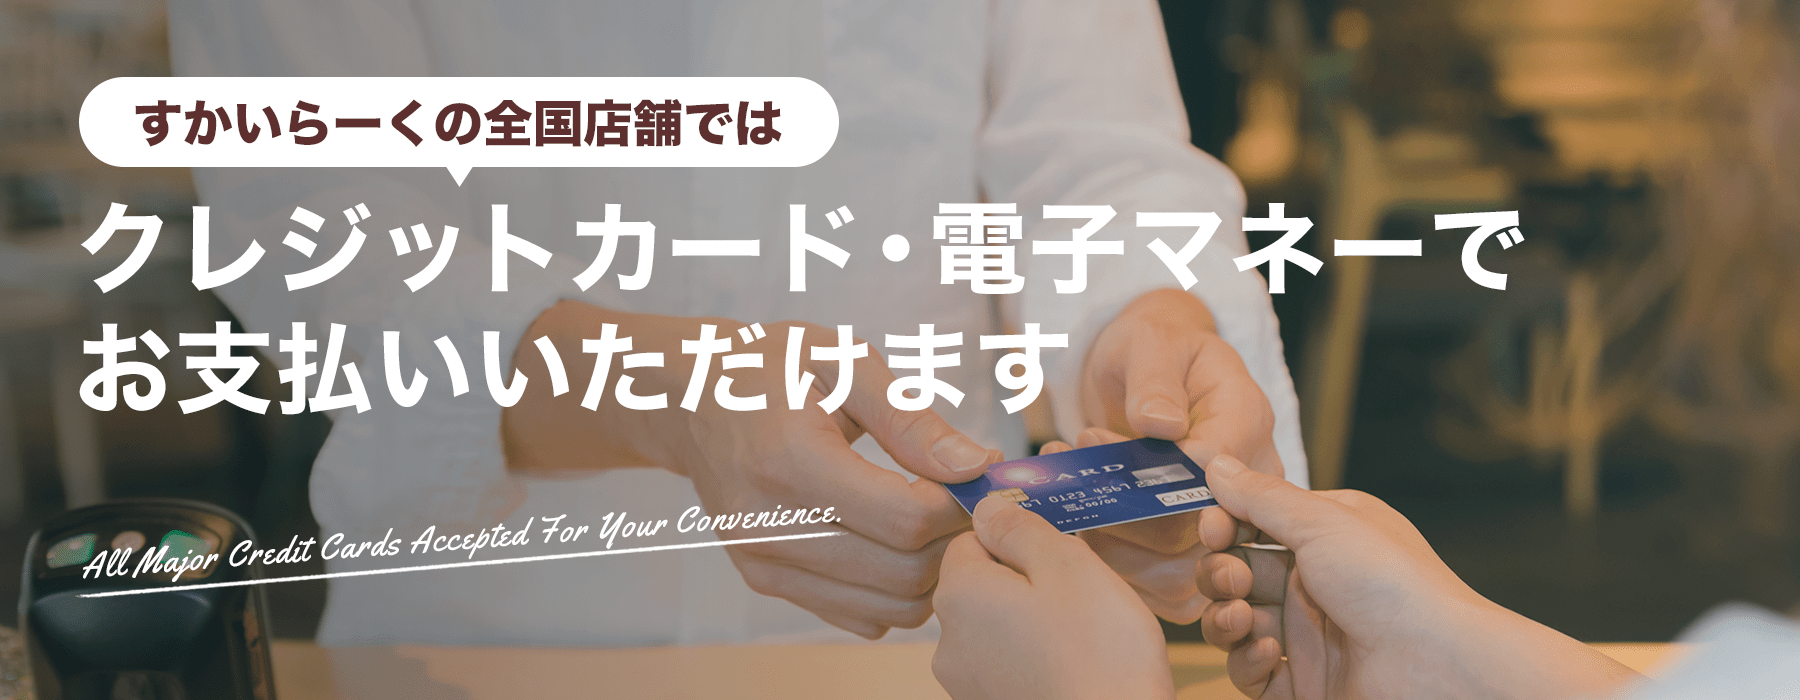 สกายลาร์ค (すかいらーく) คุณสามารถชำระเงินด้วยบัตรเครดิต / เงินอิเล็กทรอนิกส์ได้ที่ร้านค้าทั่วประเทศใน